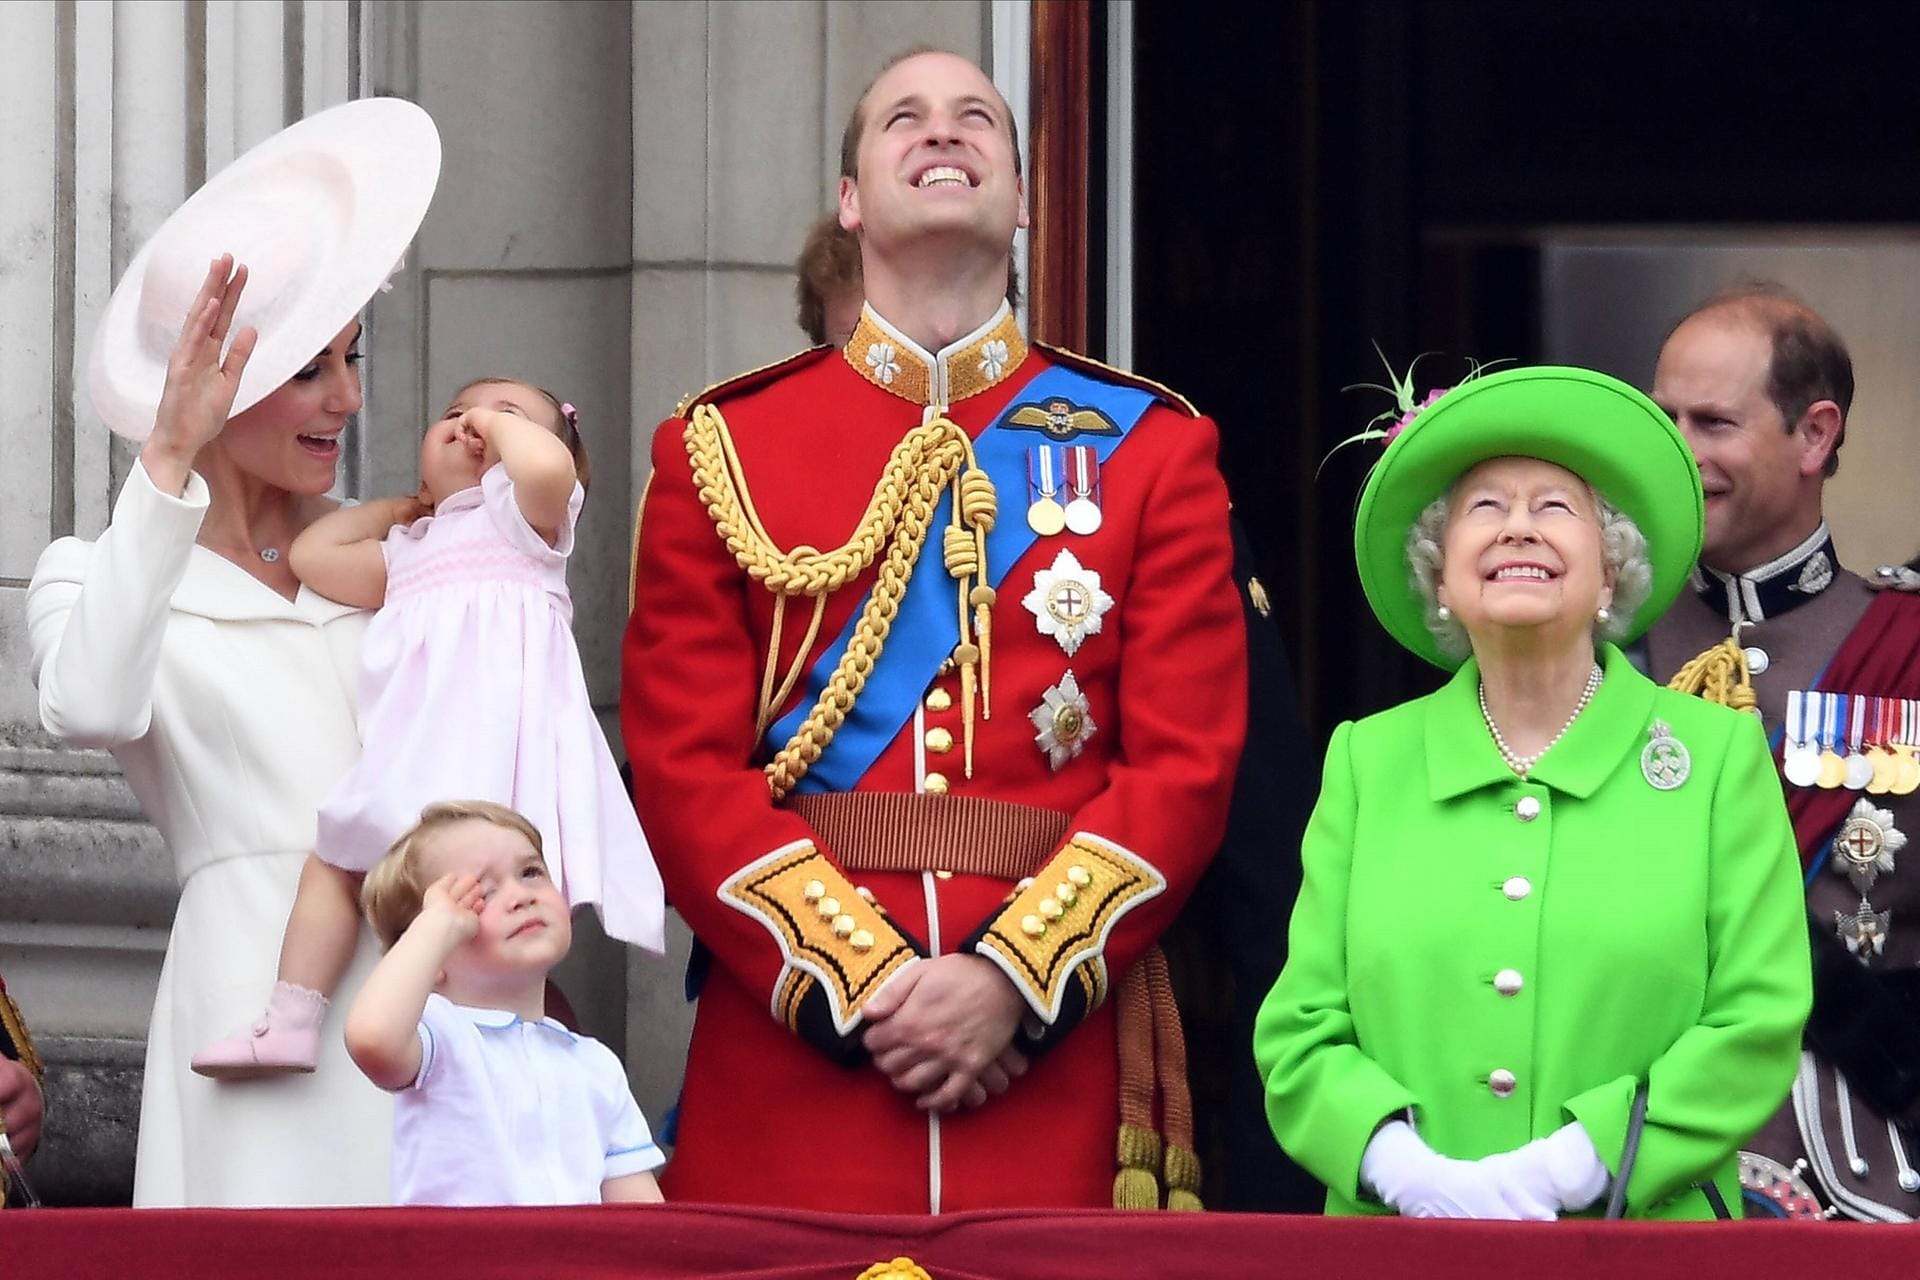 2016: Die Queen beobachtet die Parade. Neben ihr steht ihr Enkel Prinz William mit dessen Frau Herzogin Kate und ihren Kindern Prinzessin Charlotte und Prinz George. Hinter ihr sieht man ihren Sohn Prinz Edward.